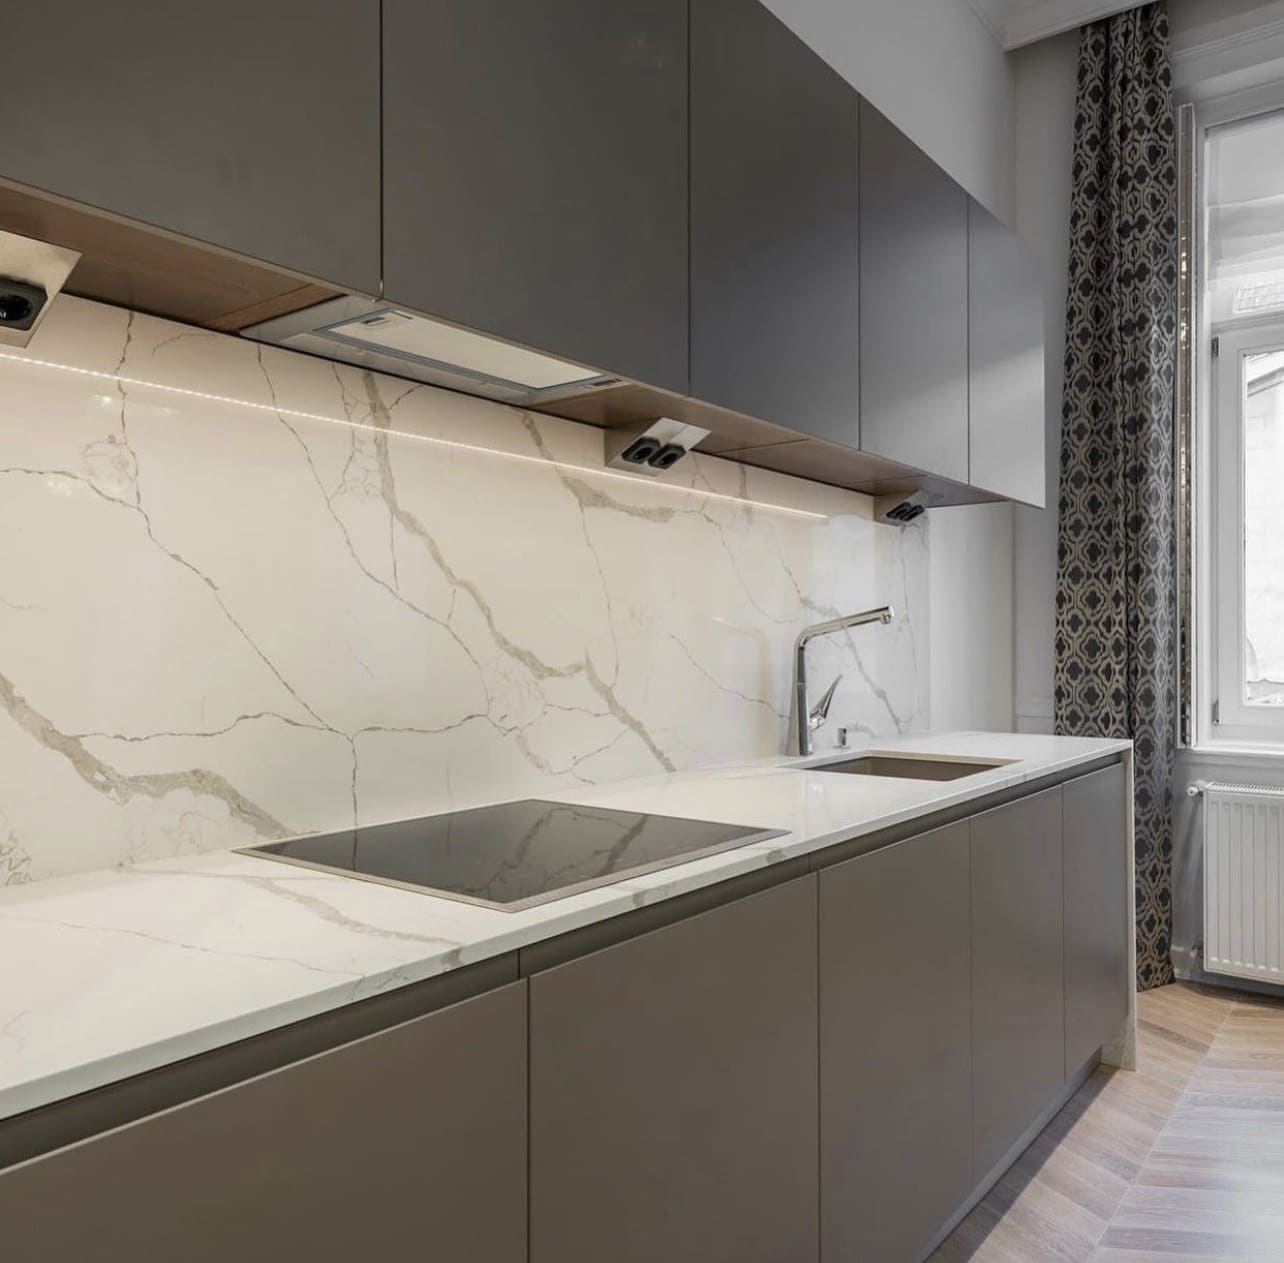 Quartz and marble kitchen worktops